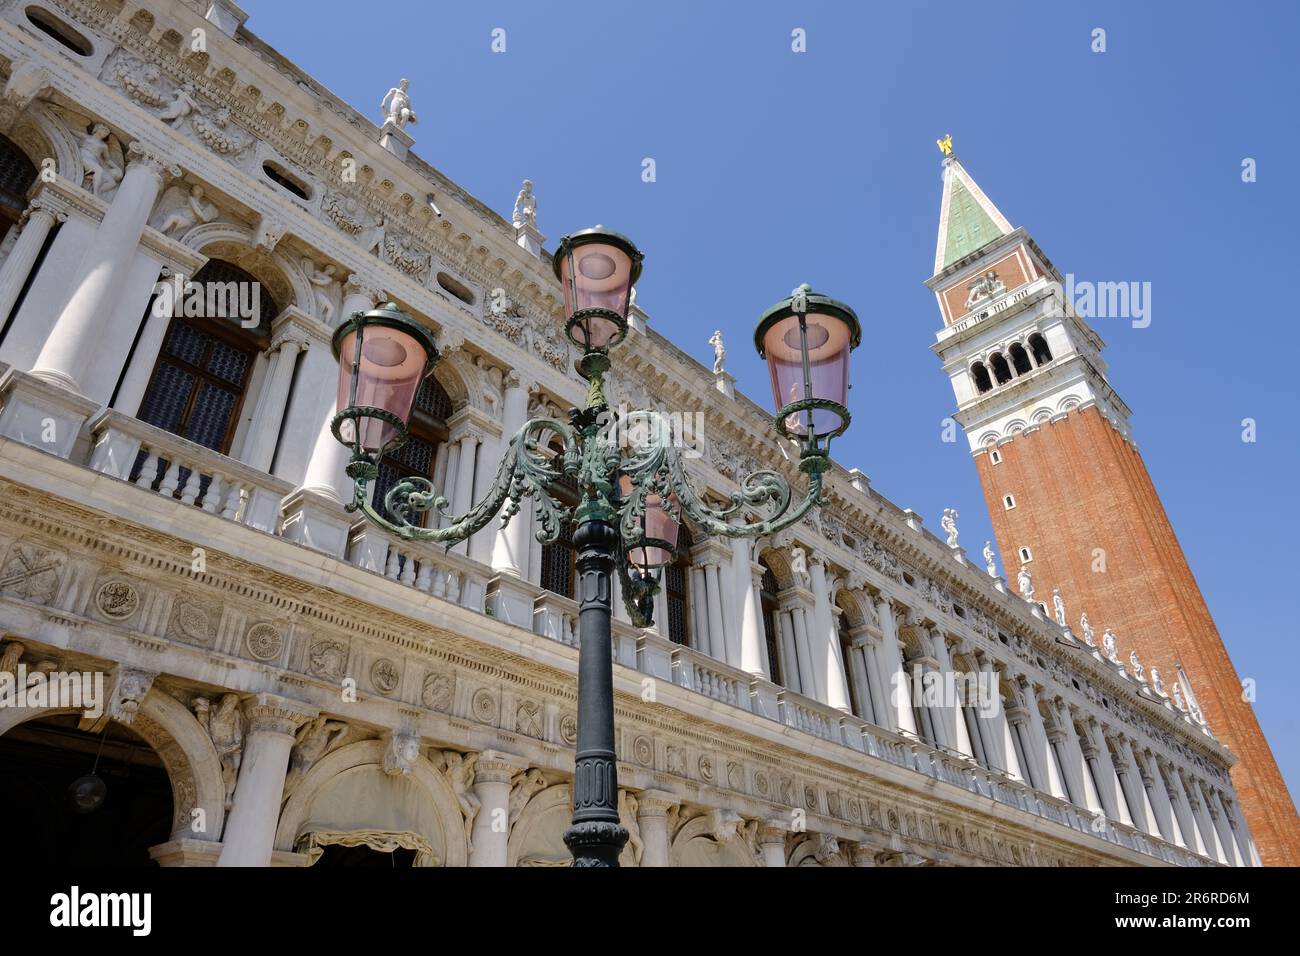 Venise Italie - Campanile St Marc - Campanile di San Marco - Tour de la place de la cathédrale Banque D'Images